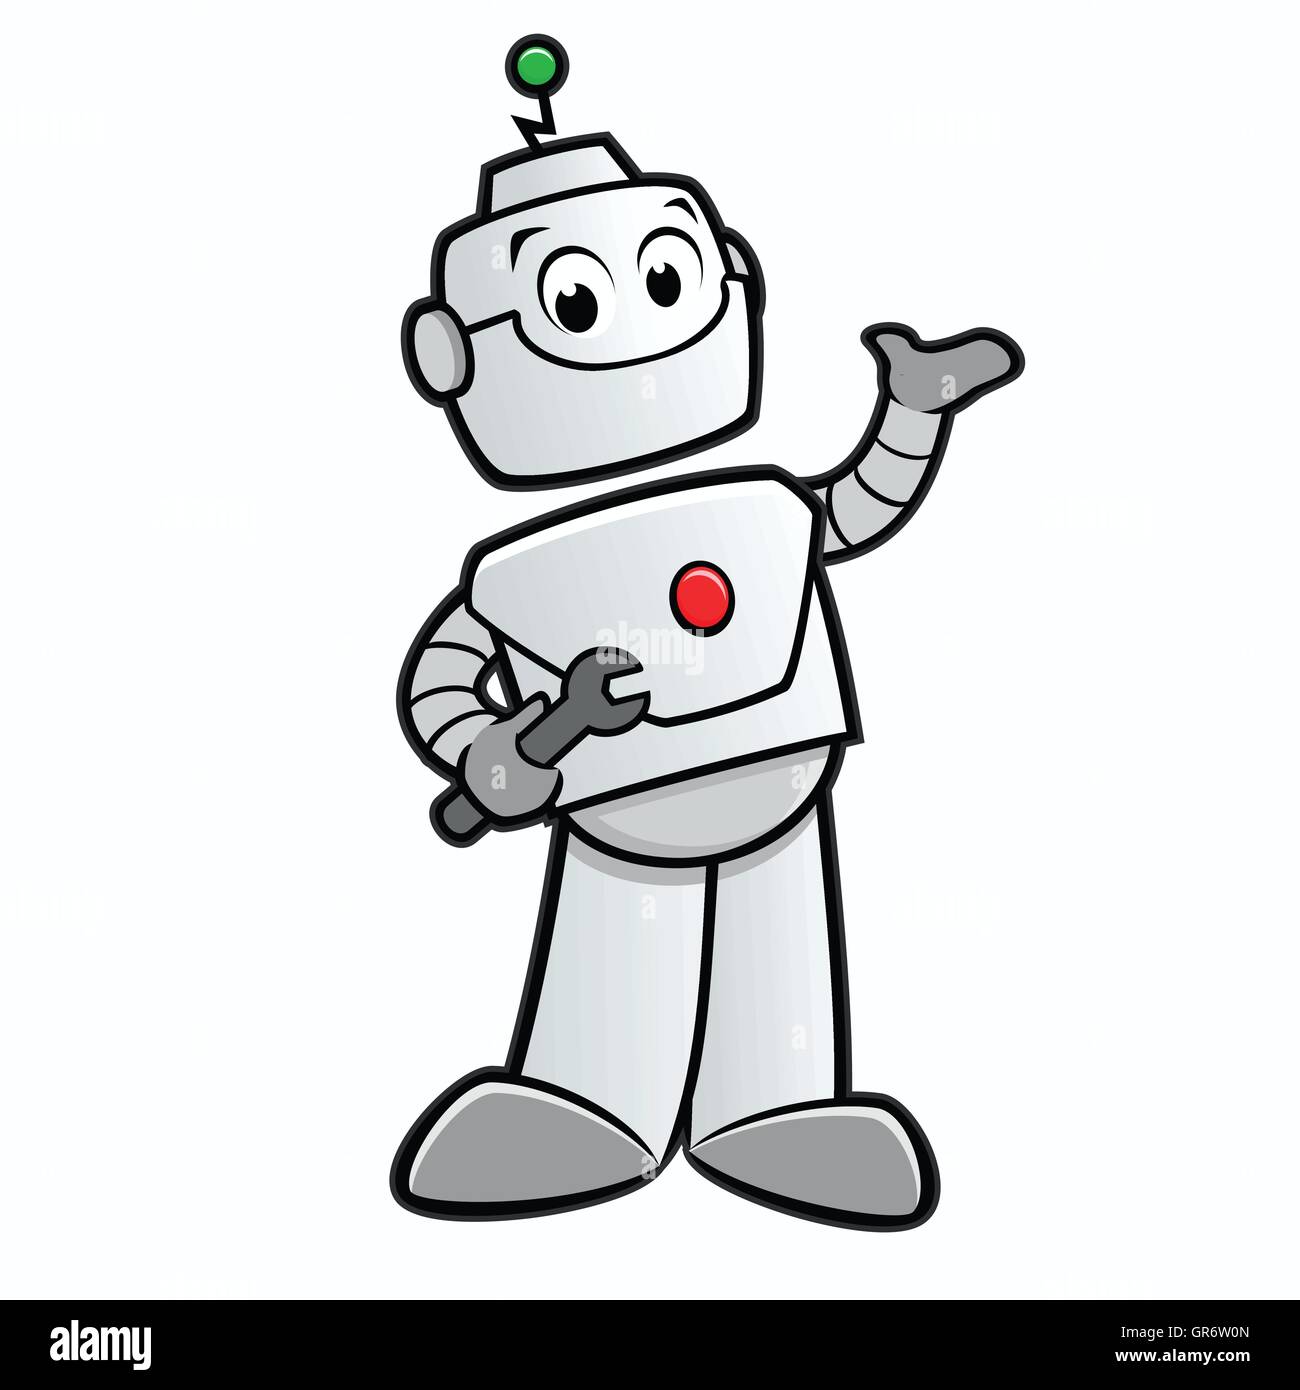 Cartoon Happy Robot Stock Vector Image & Art - Alamy